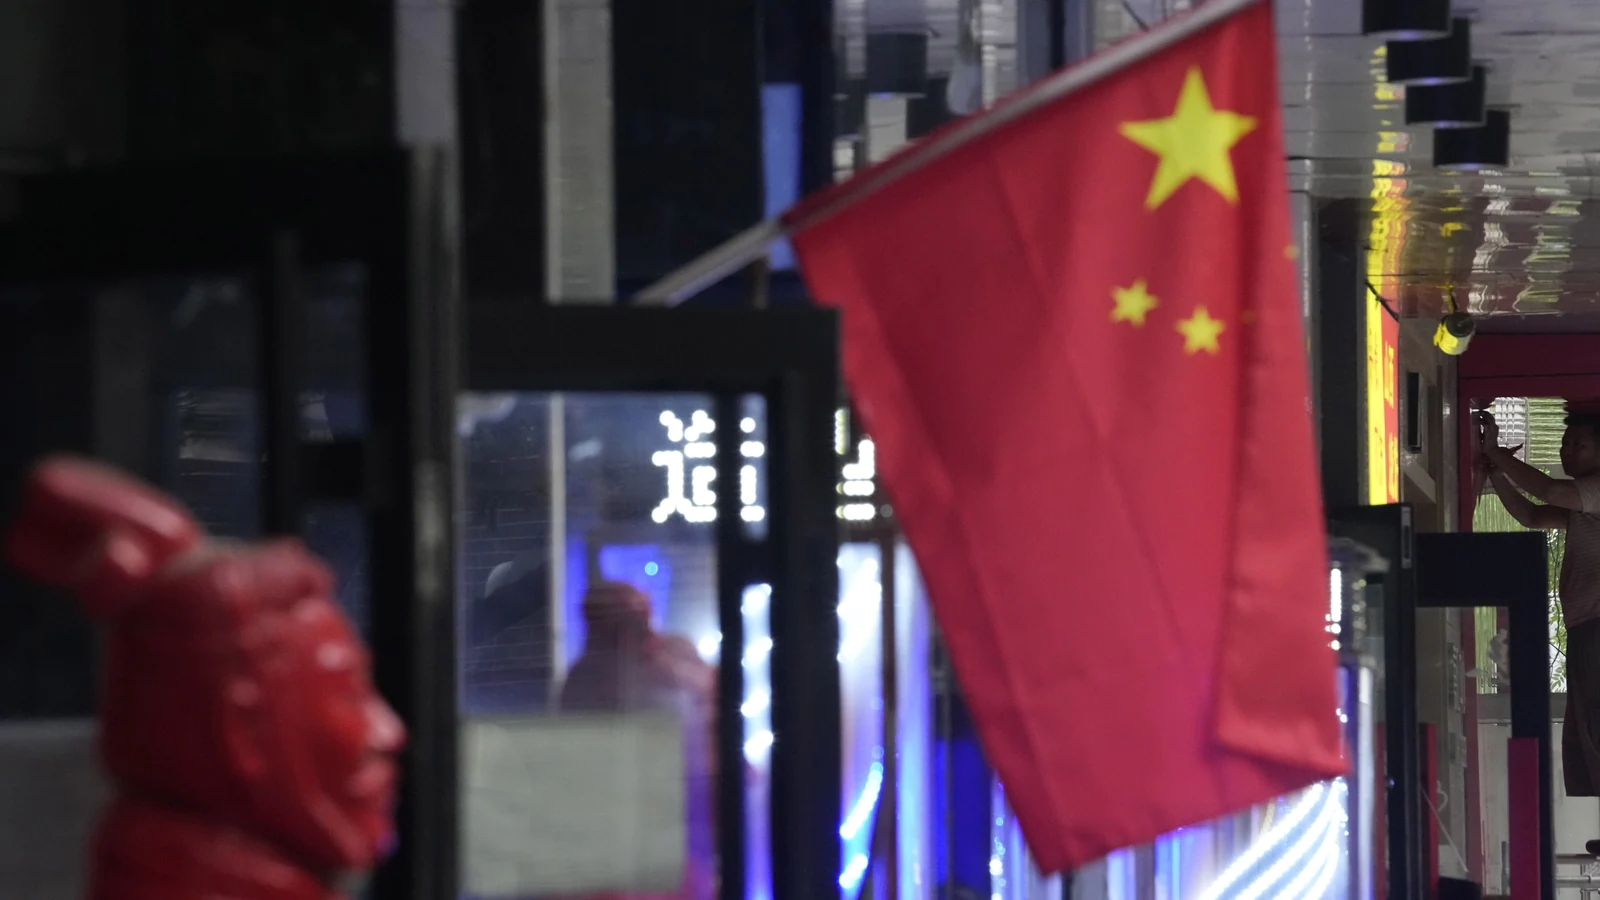 نگرانی فزاینده عمومی در مورد دستگاه های نظارتی و امنیتی چین